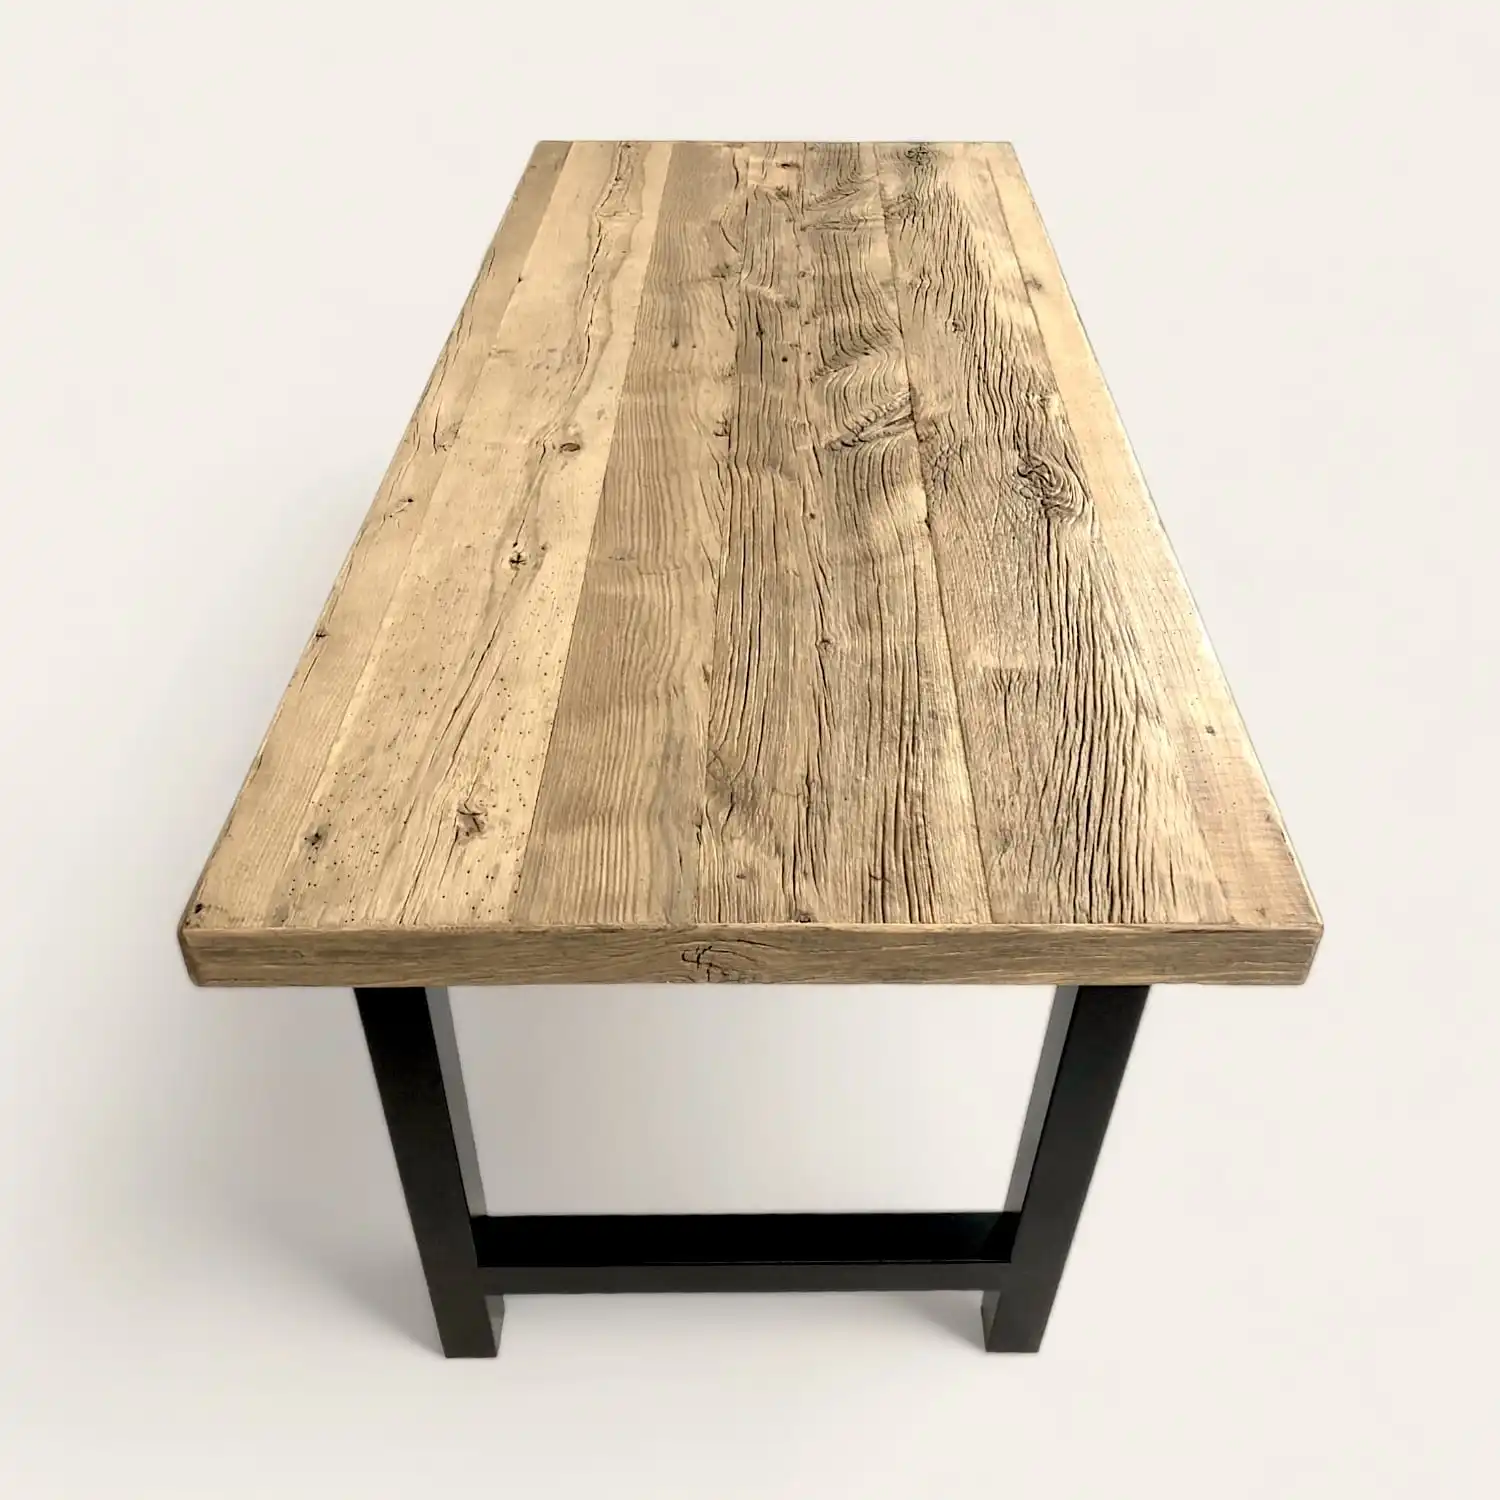  Une table à manger campagnarde en bois avec pieds noirs. 